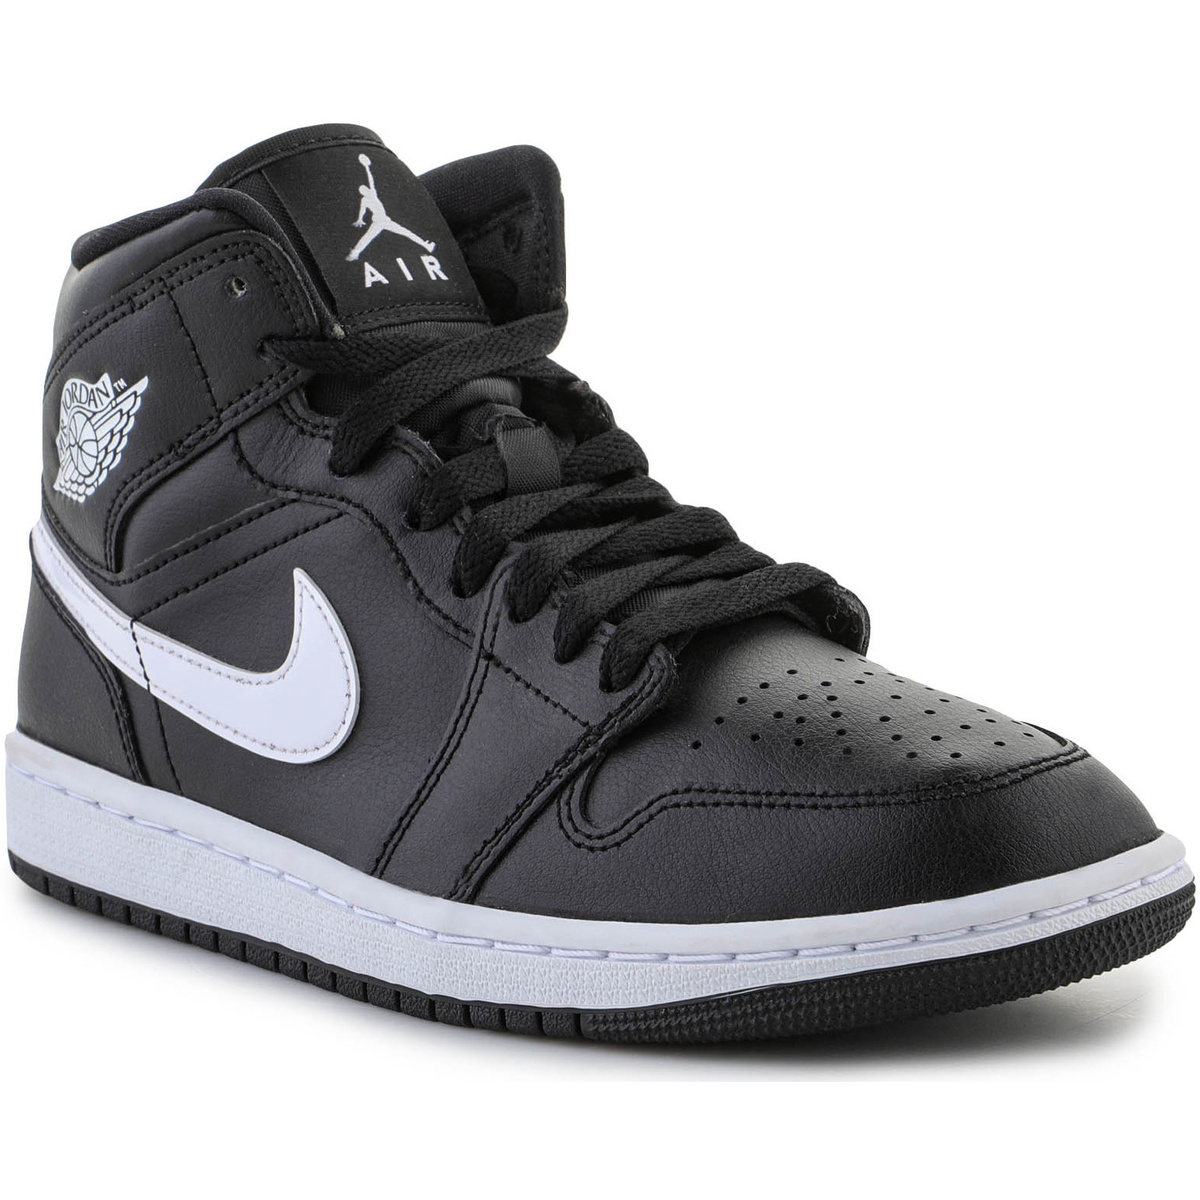 Παπούτσια του Μπάσκετ Nike Air Jordan 1 Mid Wmns “Black White” DV0991-001